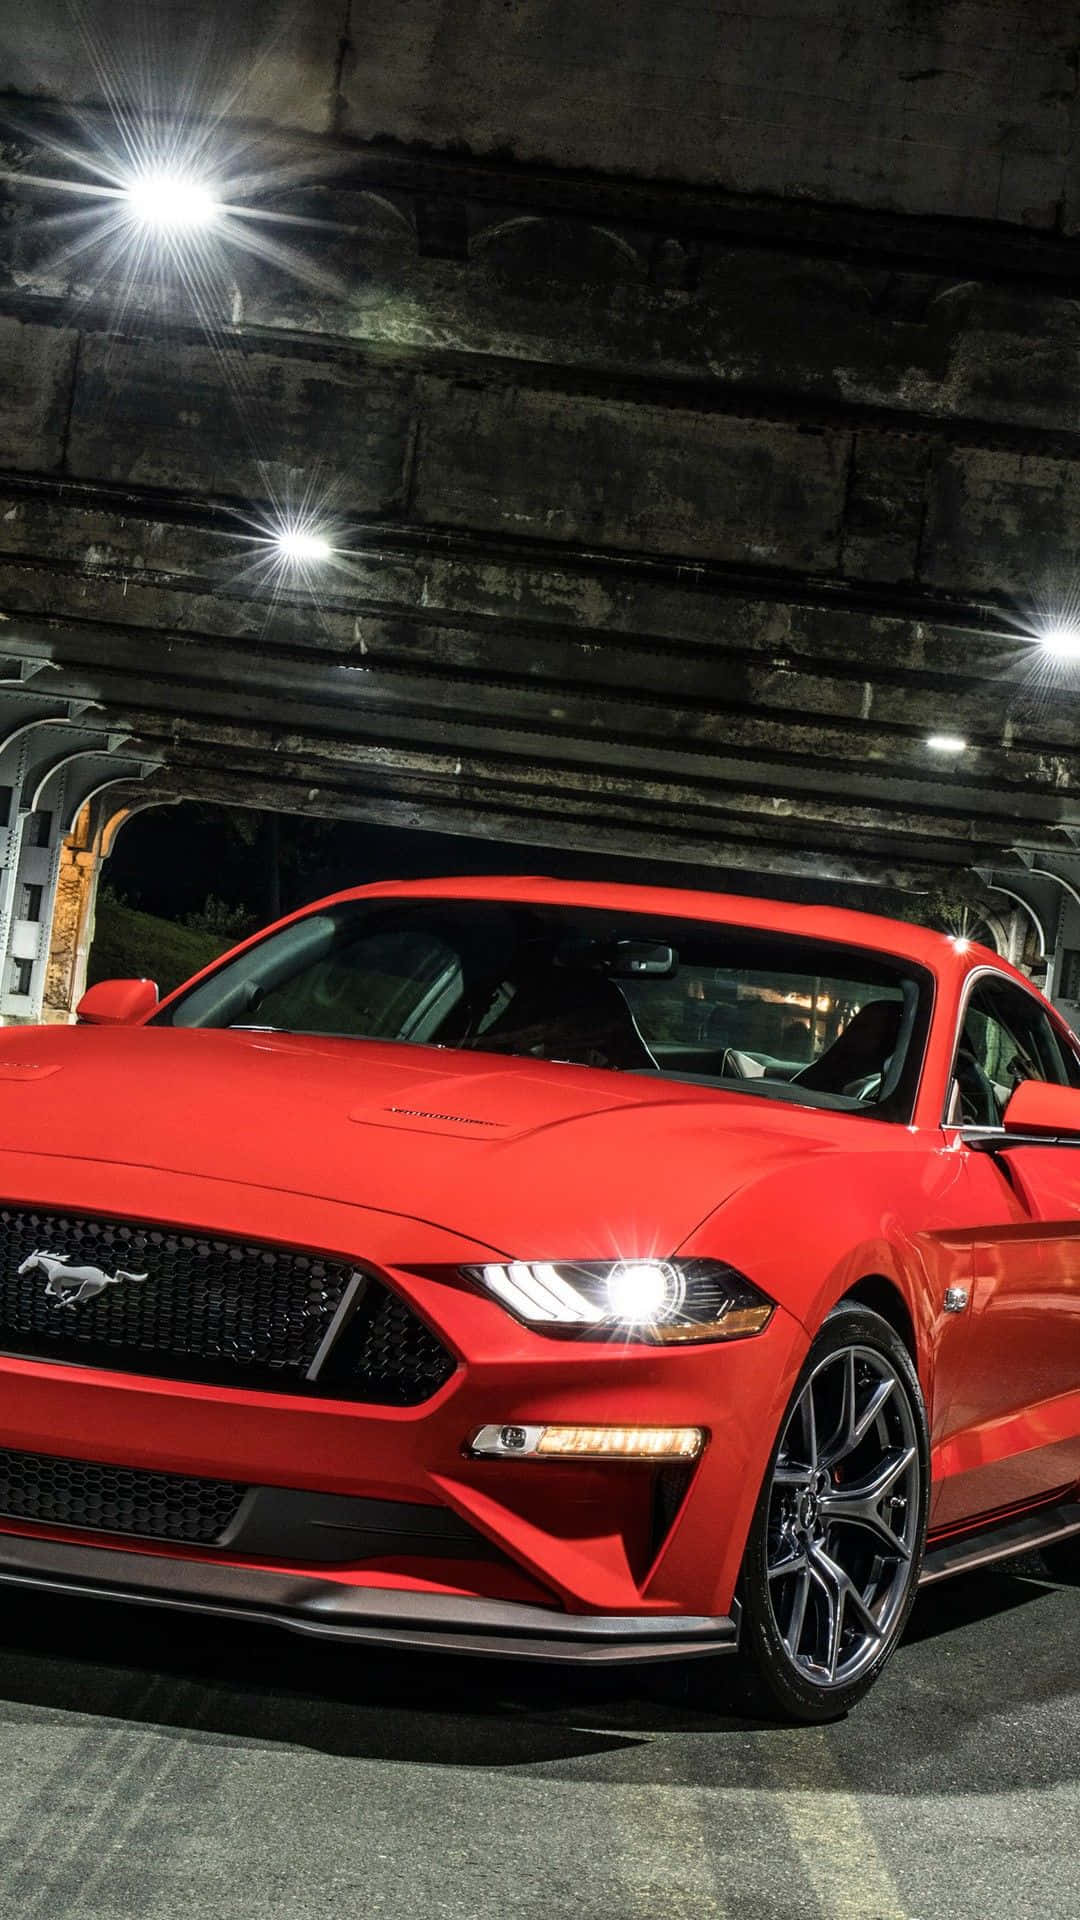 Denröda 2019 Ford Mustang Gt Står Parkerad I En Tunnel. Wallpaper